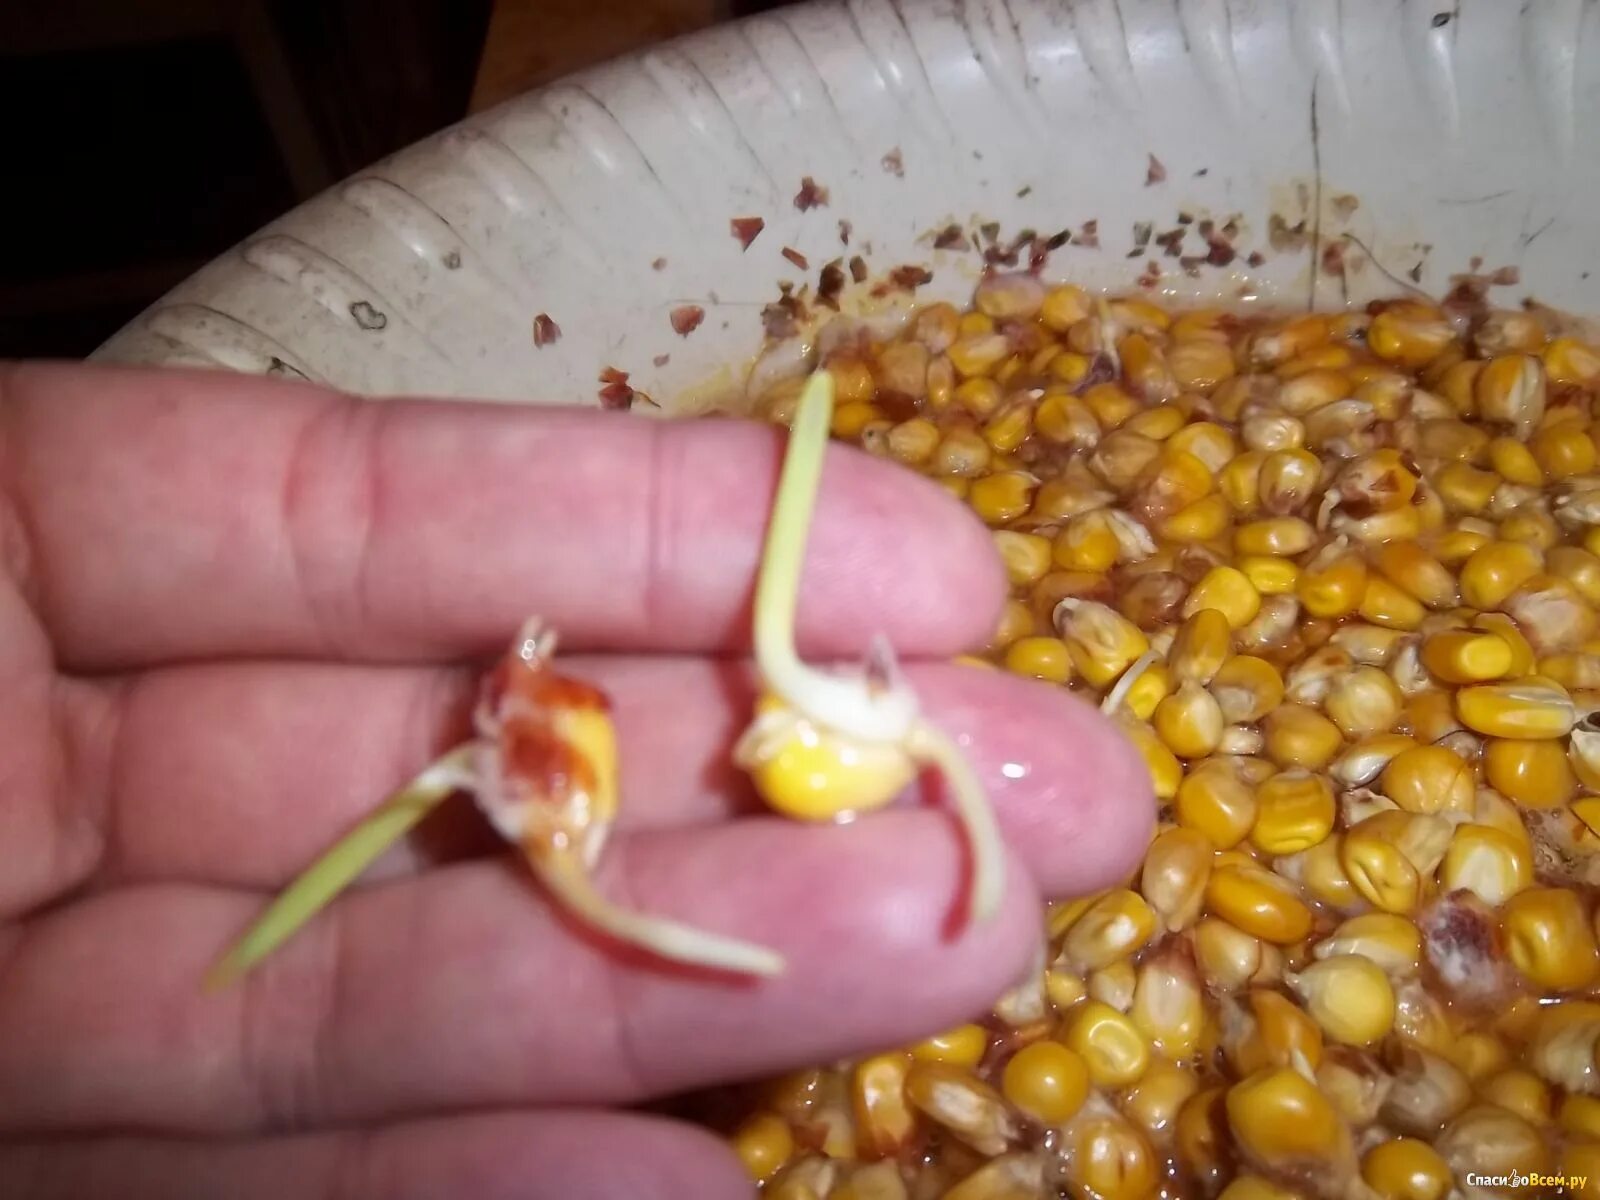 Прорастание семян кукурузы. Пророщенные семена кукурузы. Пророщенная семечка кукурузы. Прорастить семена кукурузы.